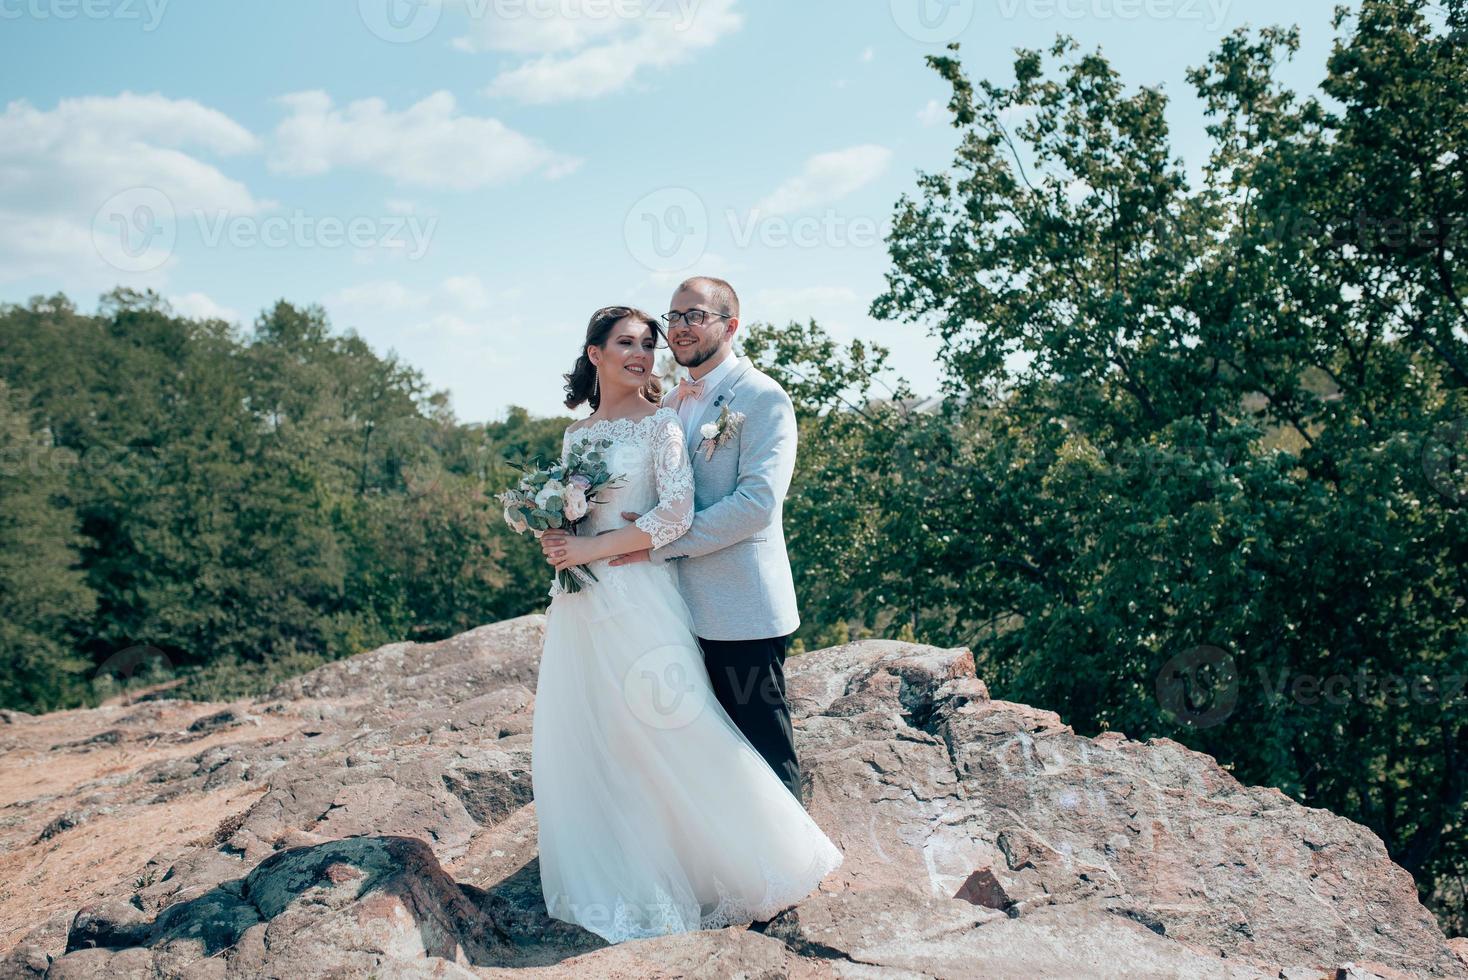 trouwfoto van een bebaarde bruidegom met bril in een grijs jasje en een bruid op een rots foto